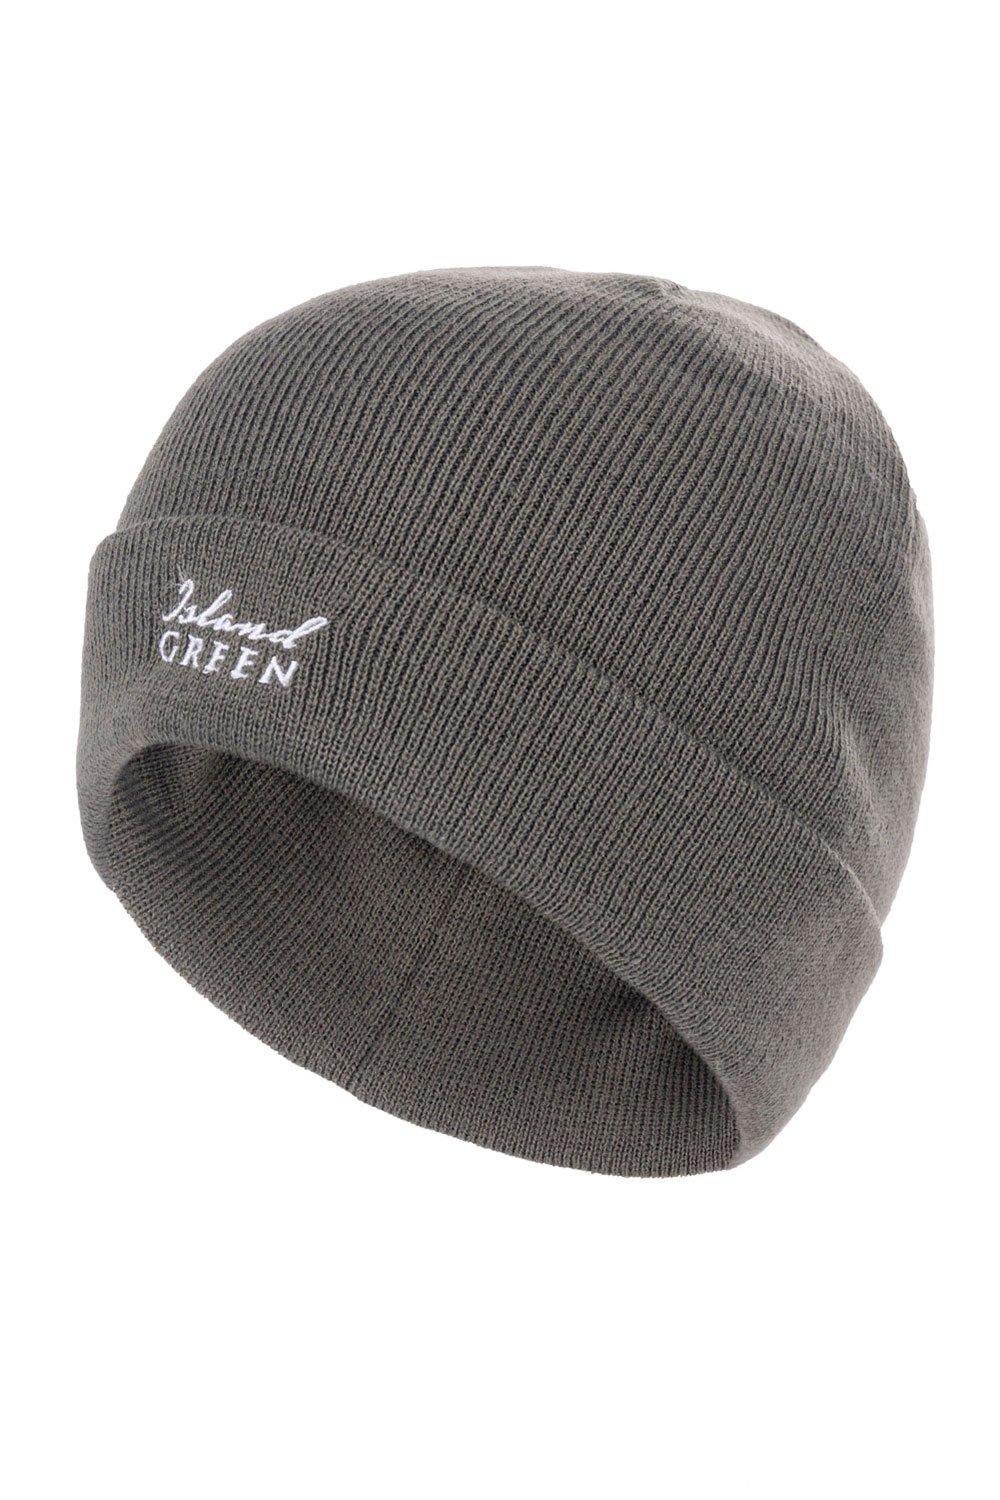 Классическая шапка-бини для гольфа Island Green, серый 2022 дизайнерская модная новая зимняя шапка сетчатая шапка для гольфа рыбацкая шапка шапка для гольфа унисекс бейсбольная шапка шапка для